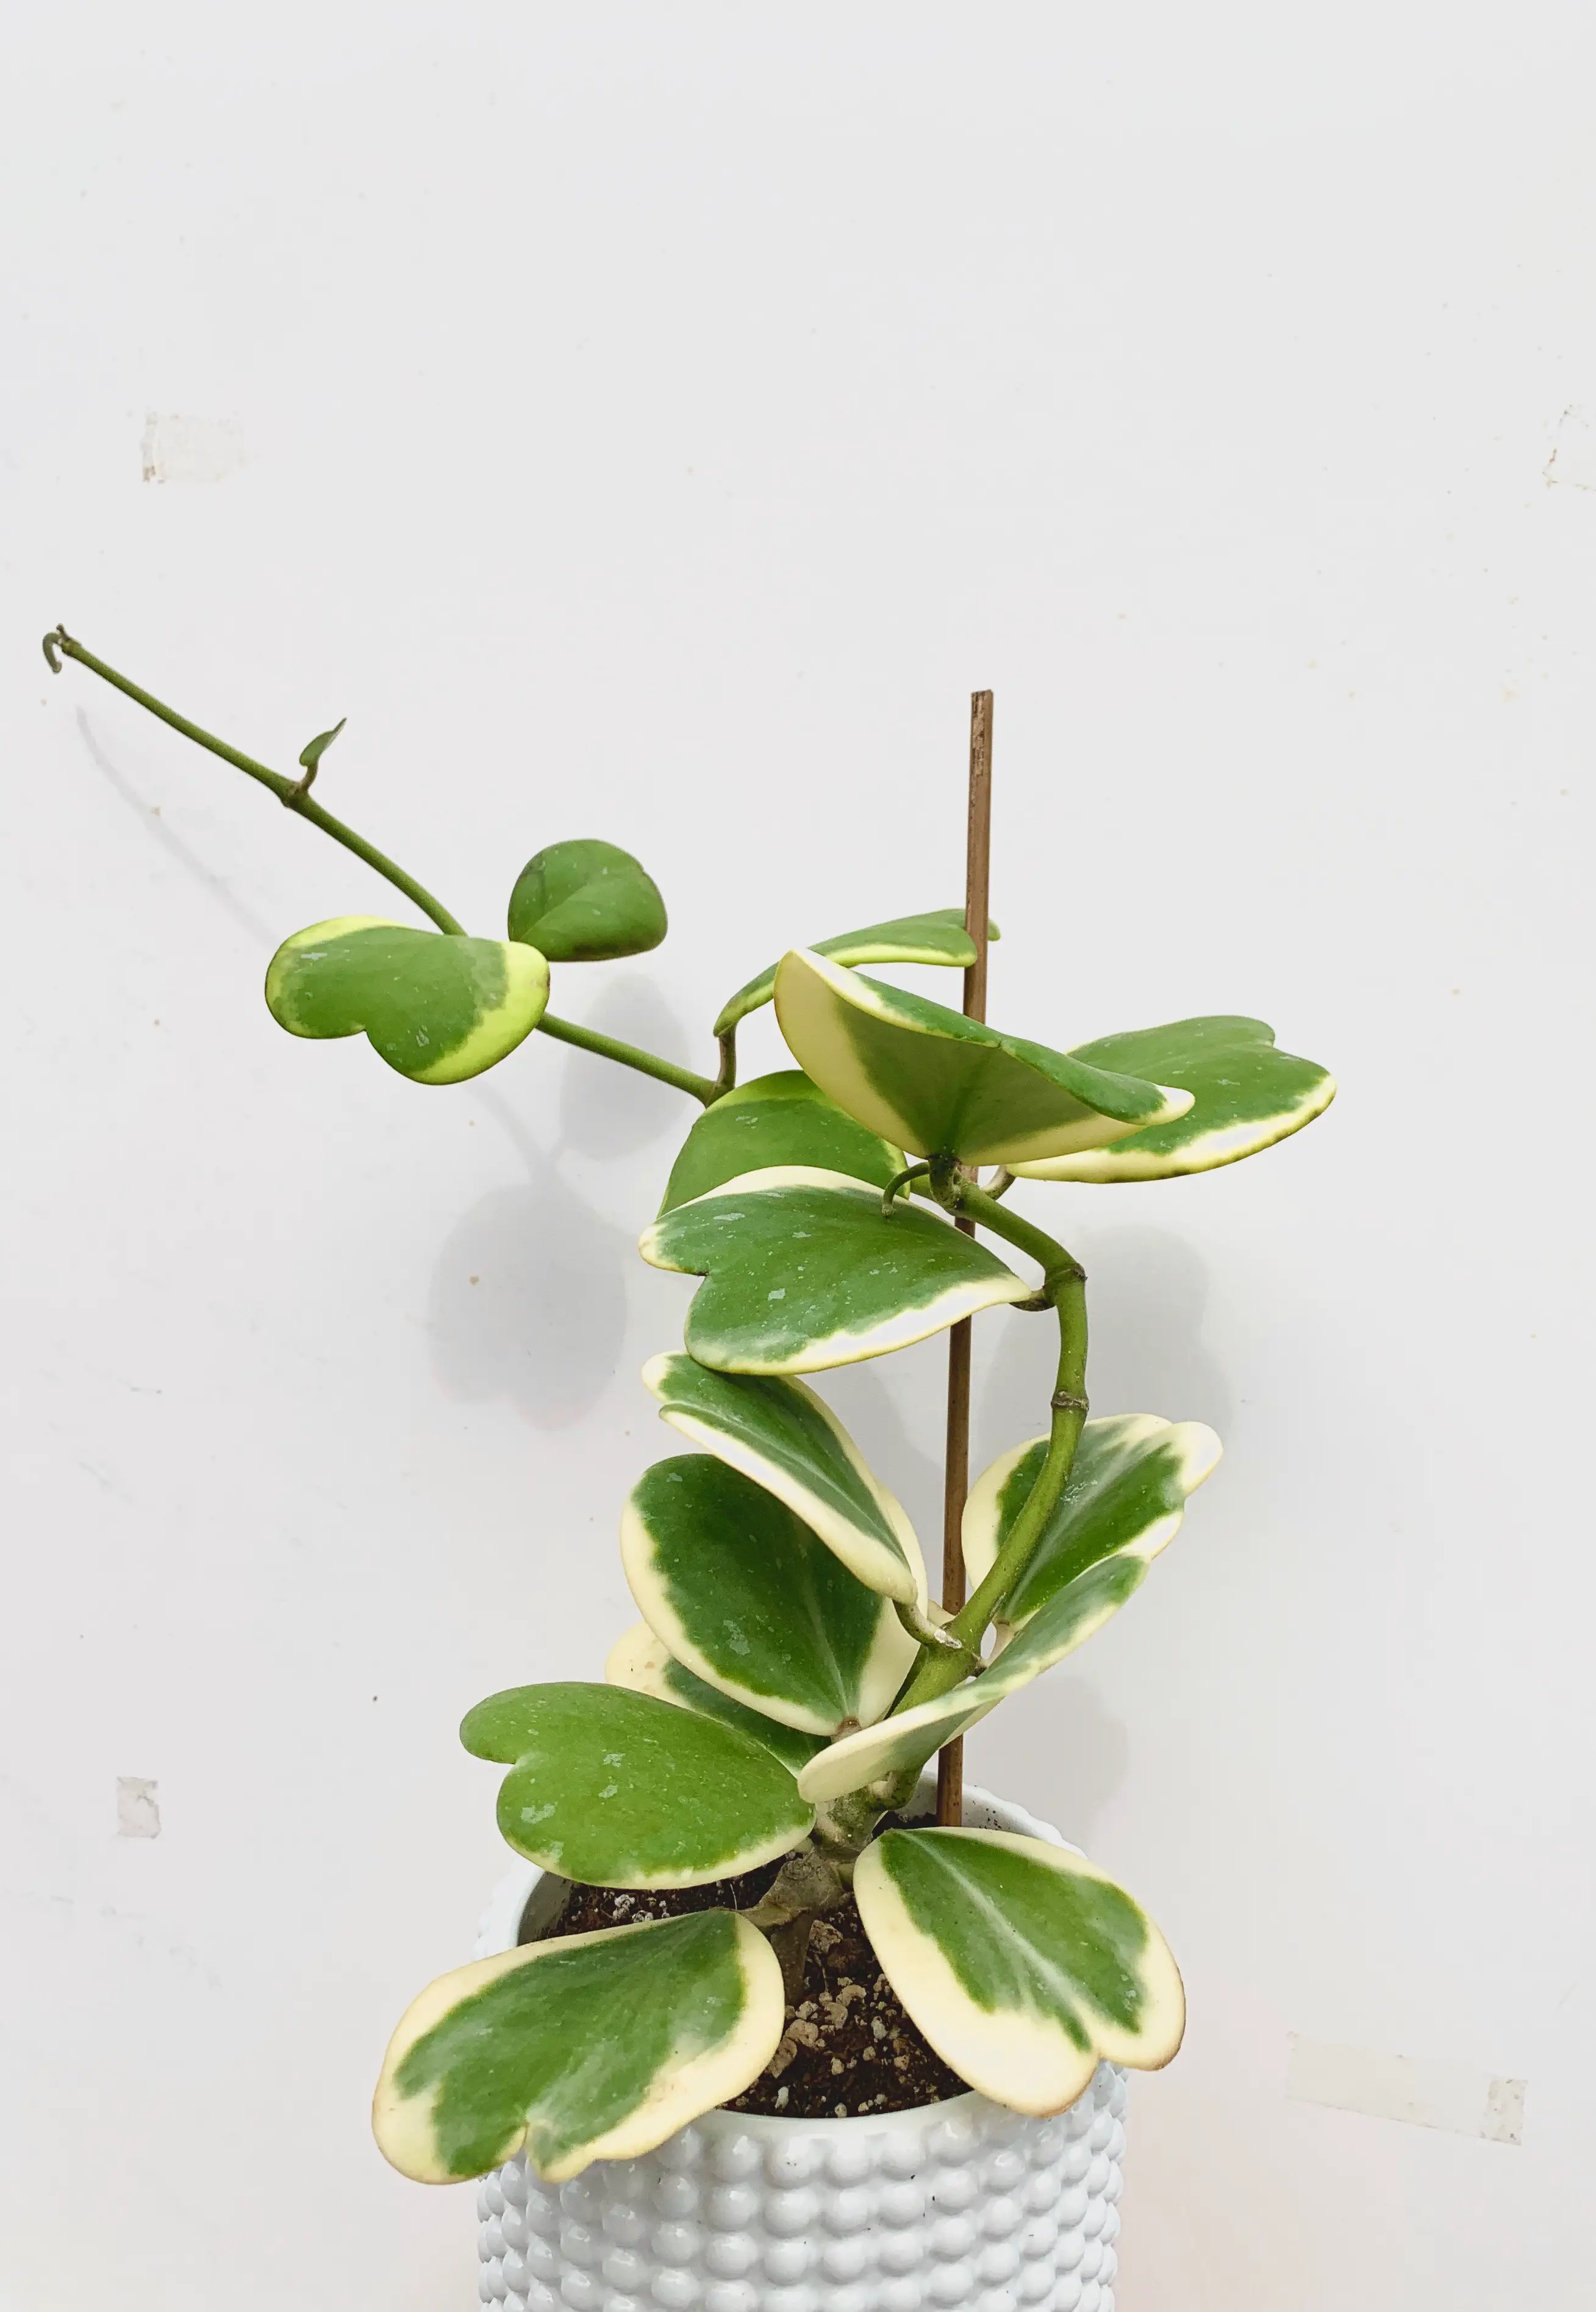 hoya kerrii variegata vining plant on trellis leaves